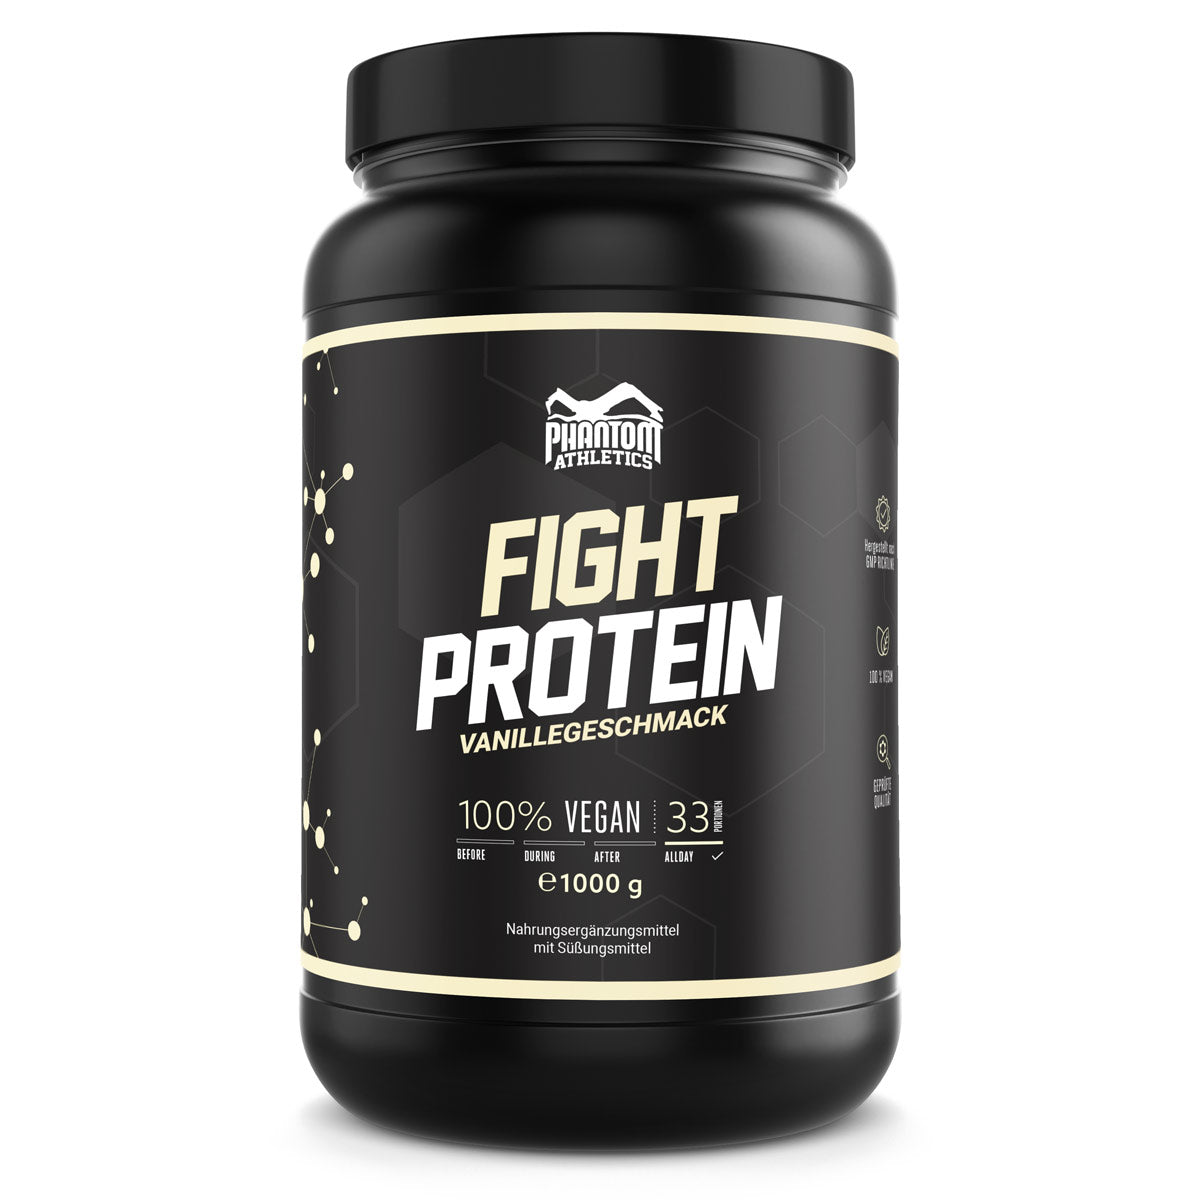 Phantom FIGHT Protein für Kampfsportler mit Vanille Geschmack.